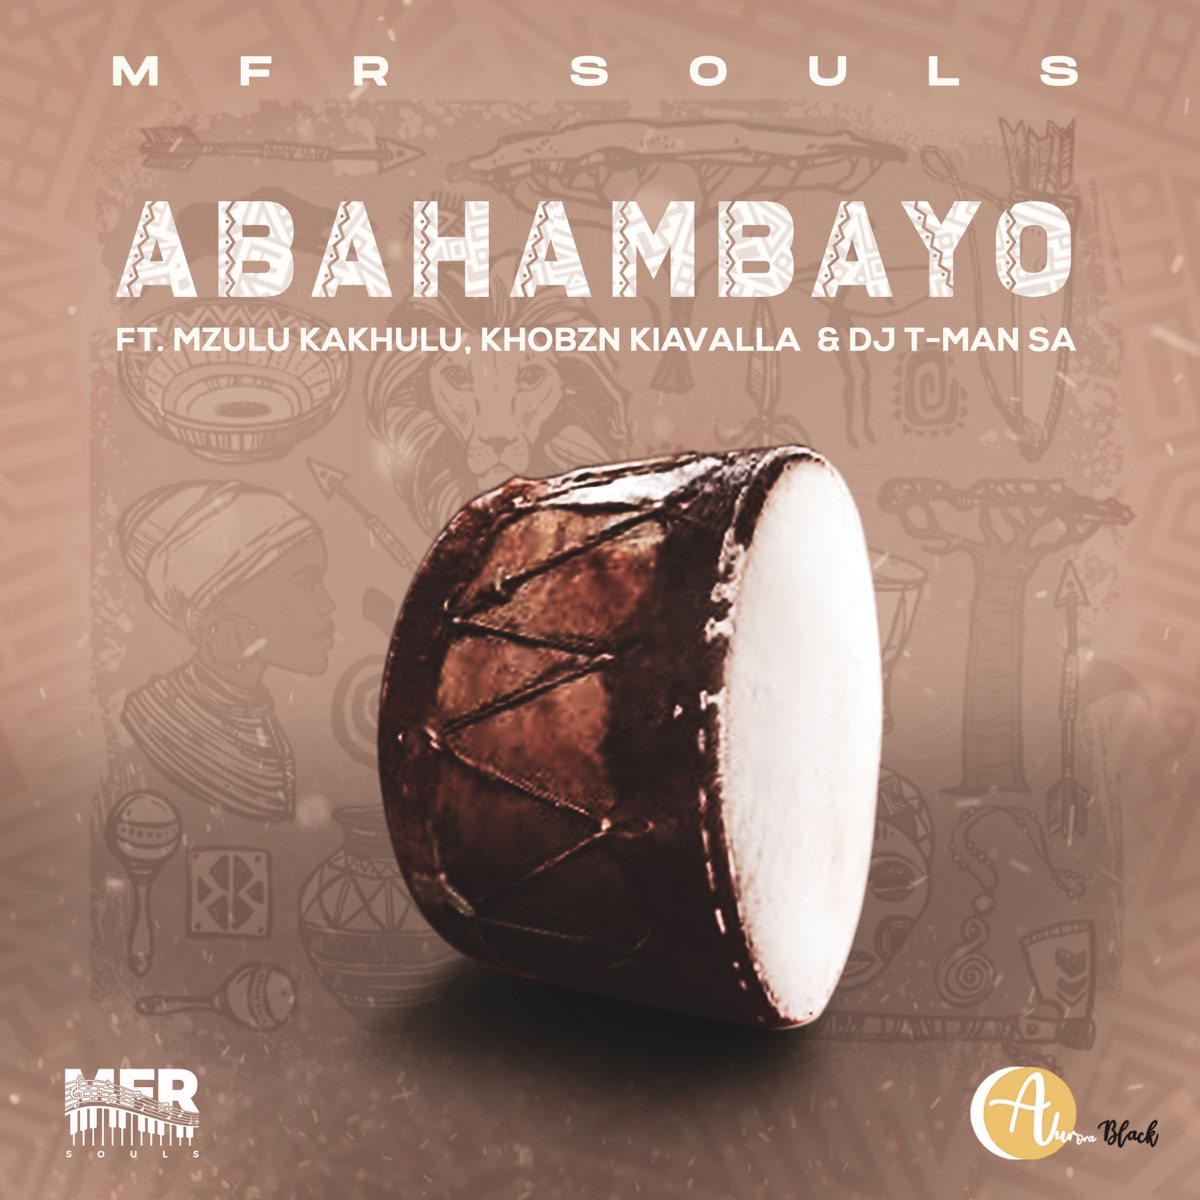 MFR Souls – Abahambayo Ft. Mzulu Kakhulu, Khobzn Kiavalla, T-Man SA